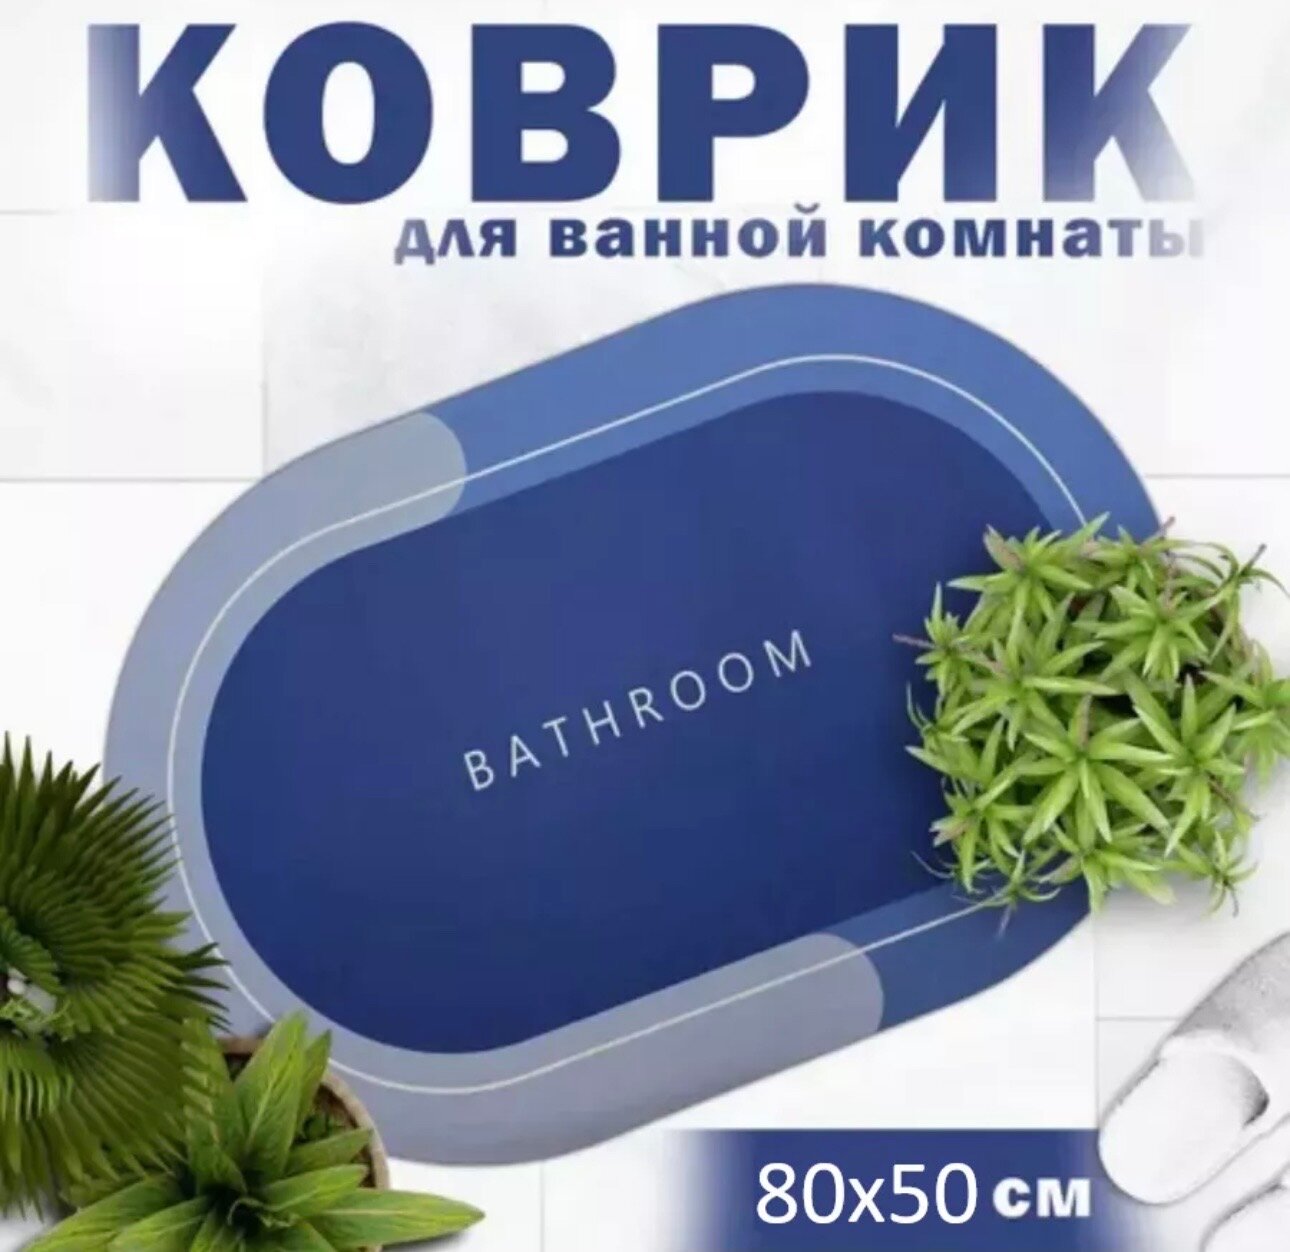 Коврик для ванной и туалета Ridberg PP 50*80 см, синий влаговпитывающий, быстросохнущий, противоскользящий, прикроватный коврик